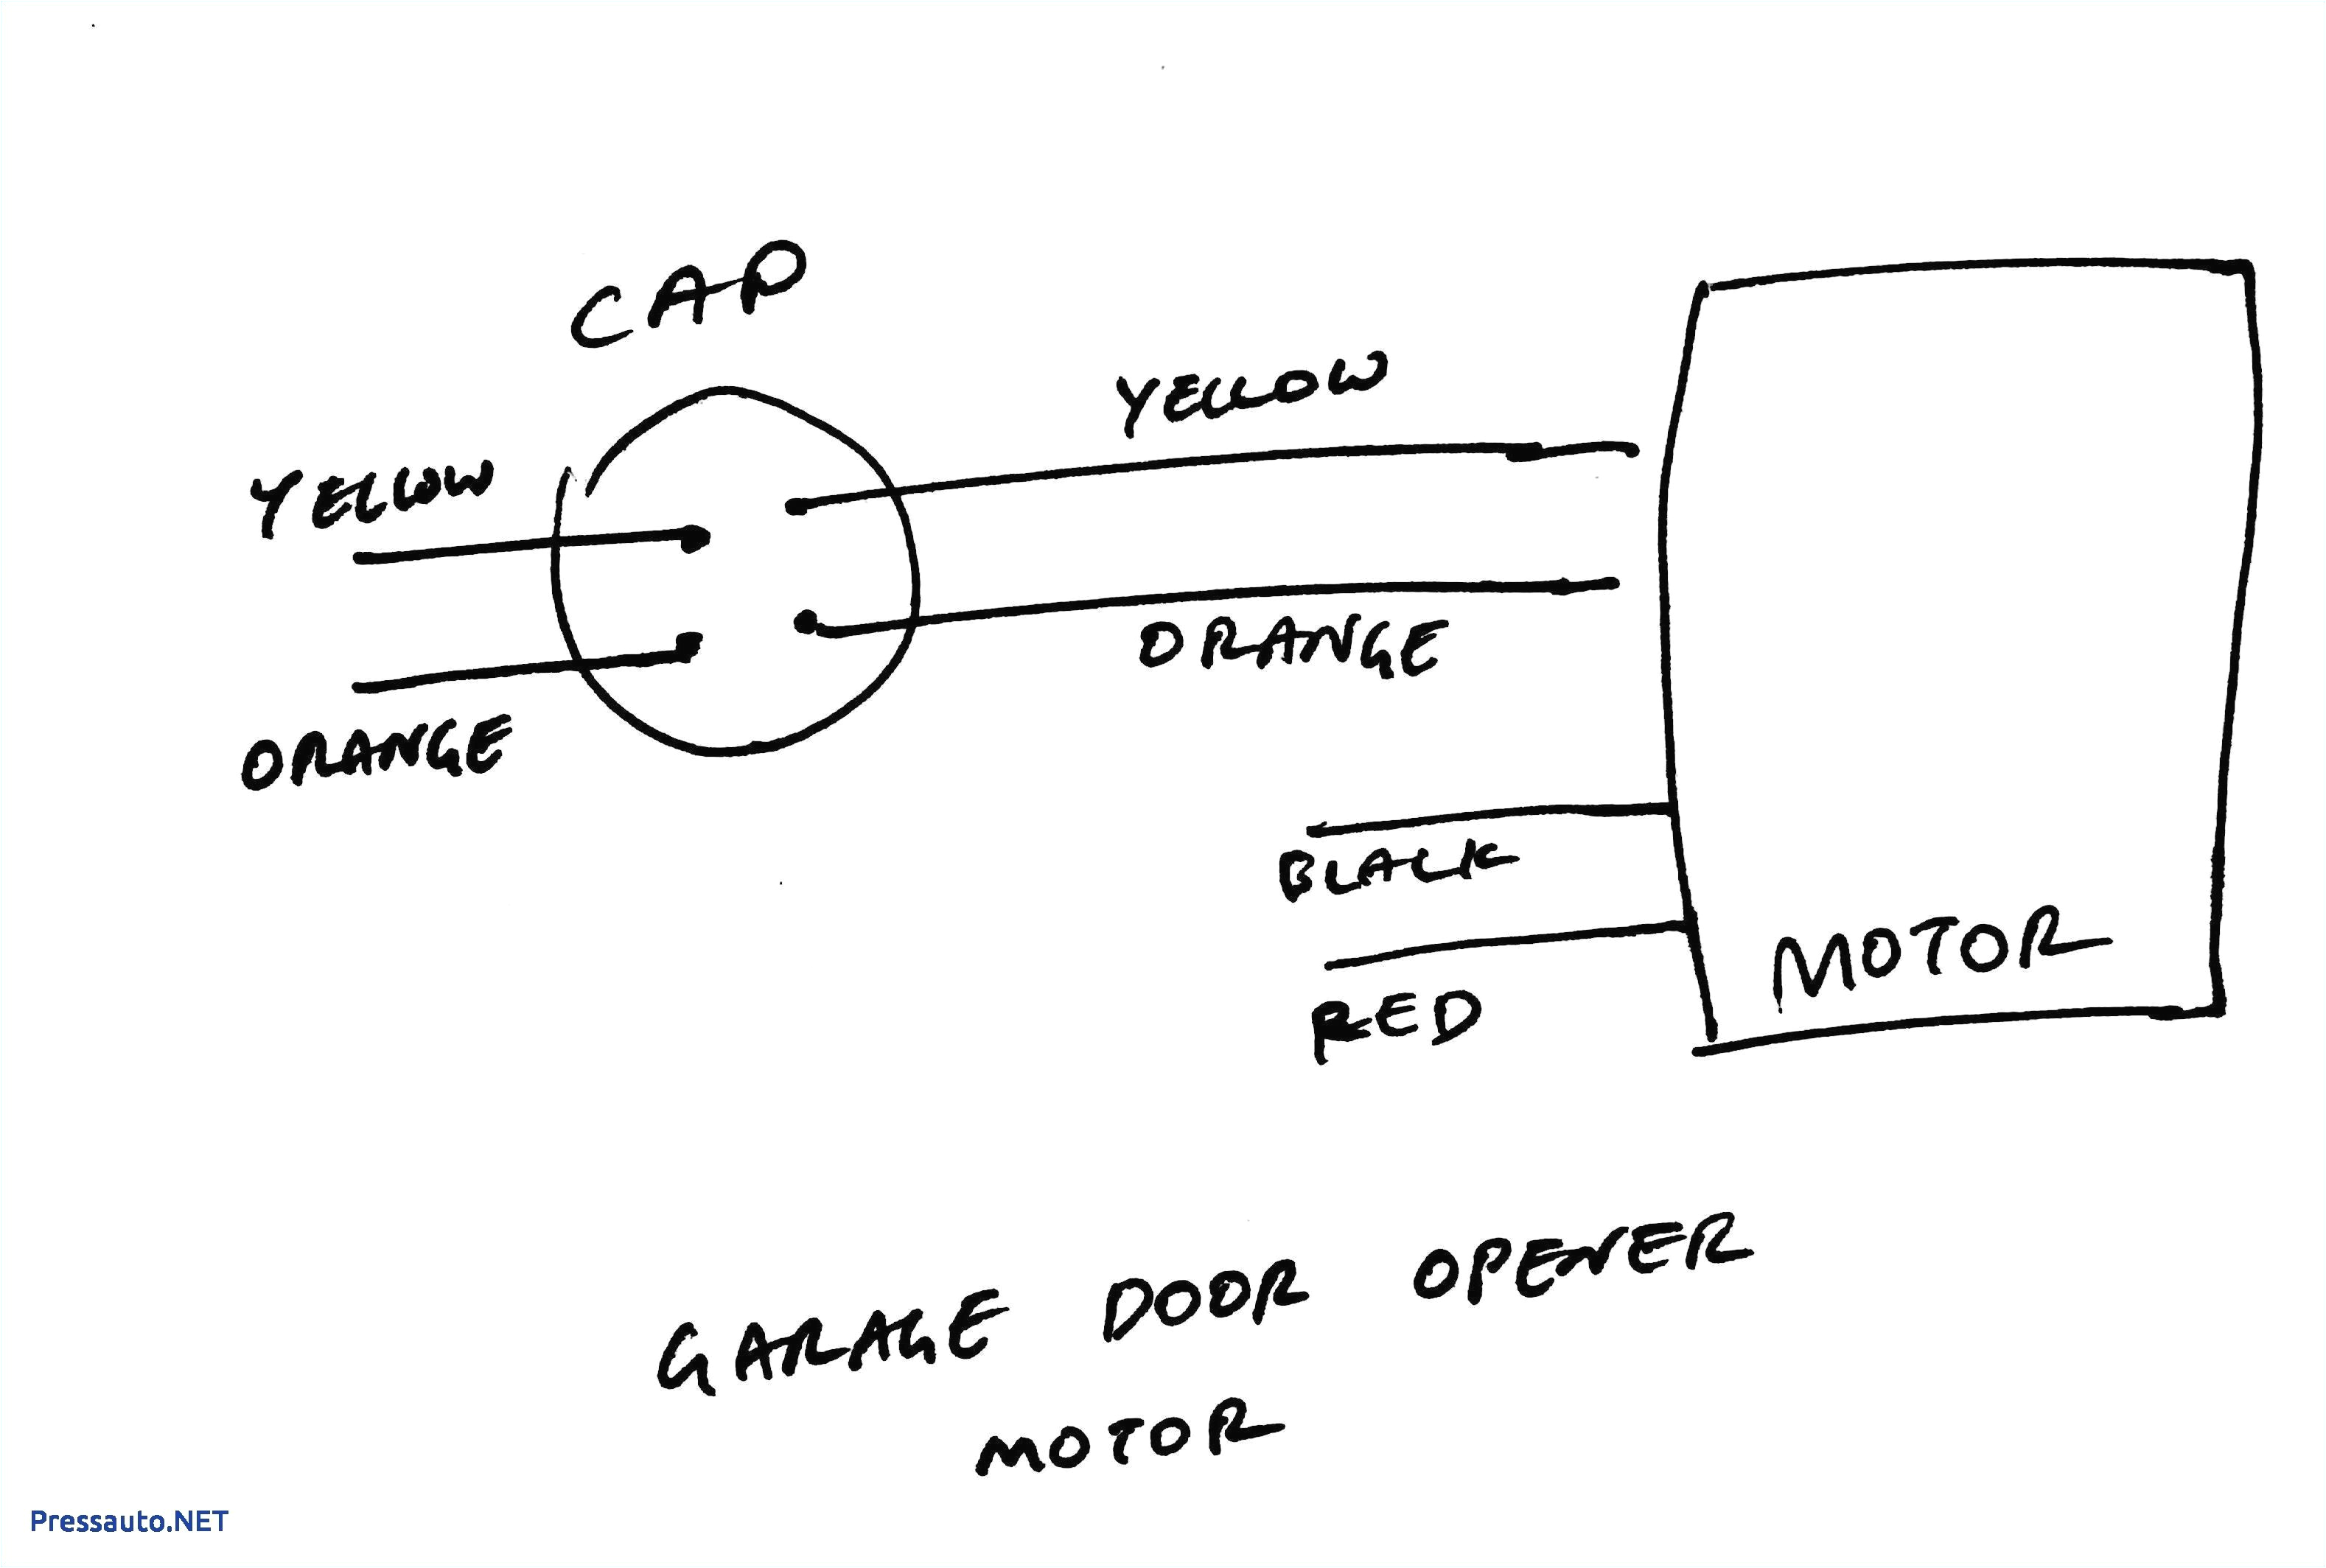 ac start capacitor wiring wiring diagram fascinating 4 terminal capacitor wiring diagram 4 capacitor wiring diagram